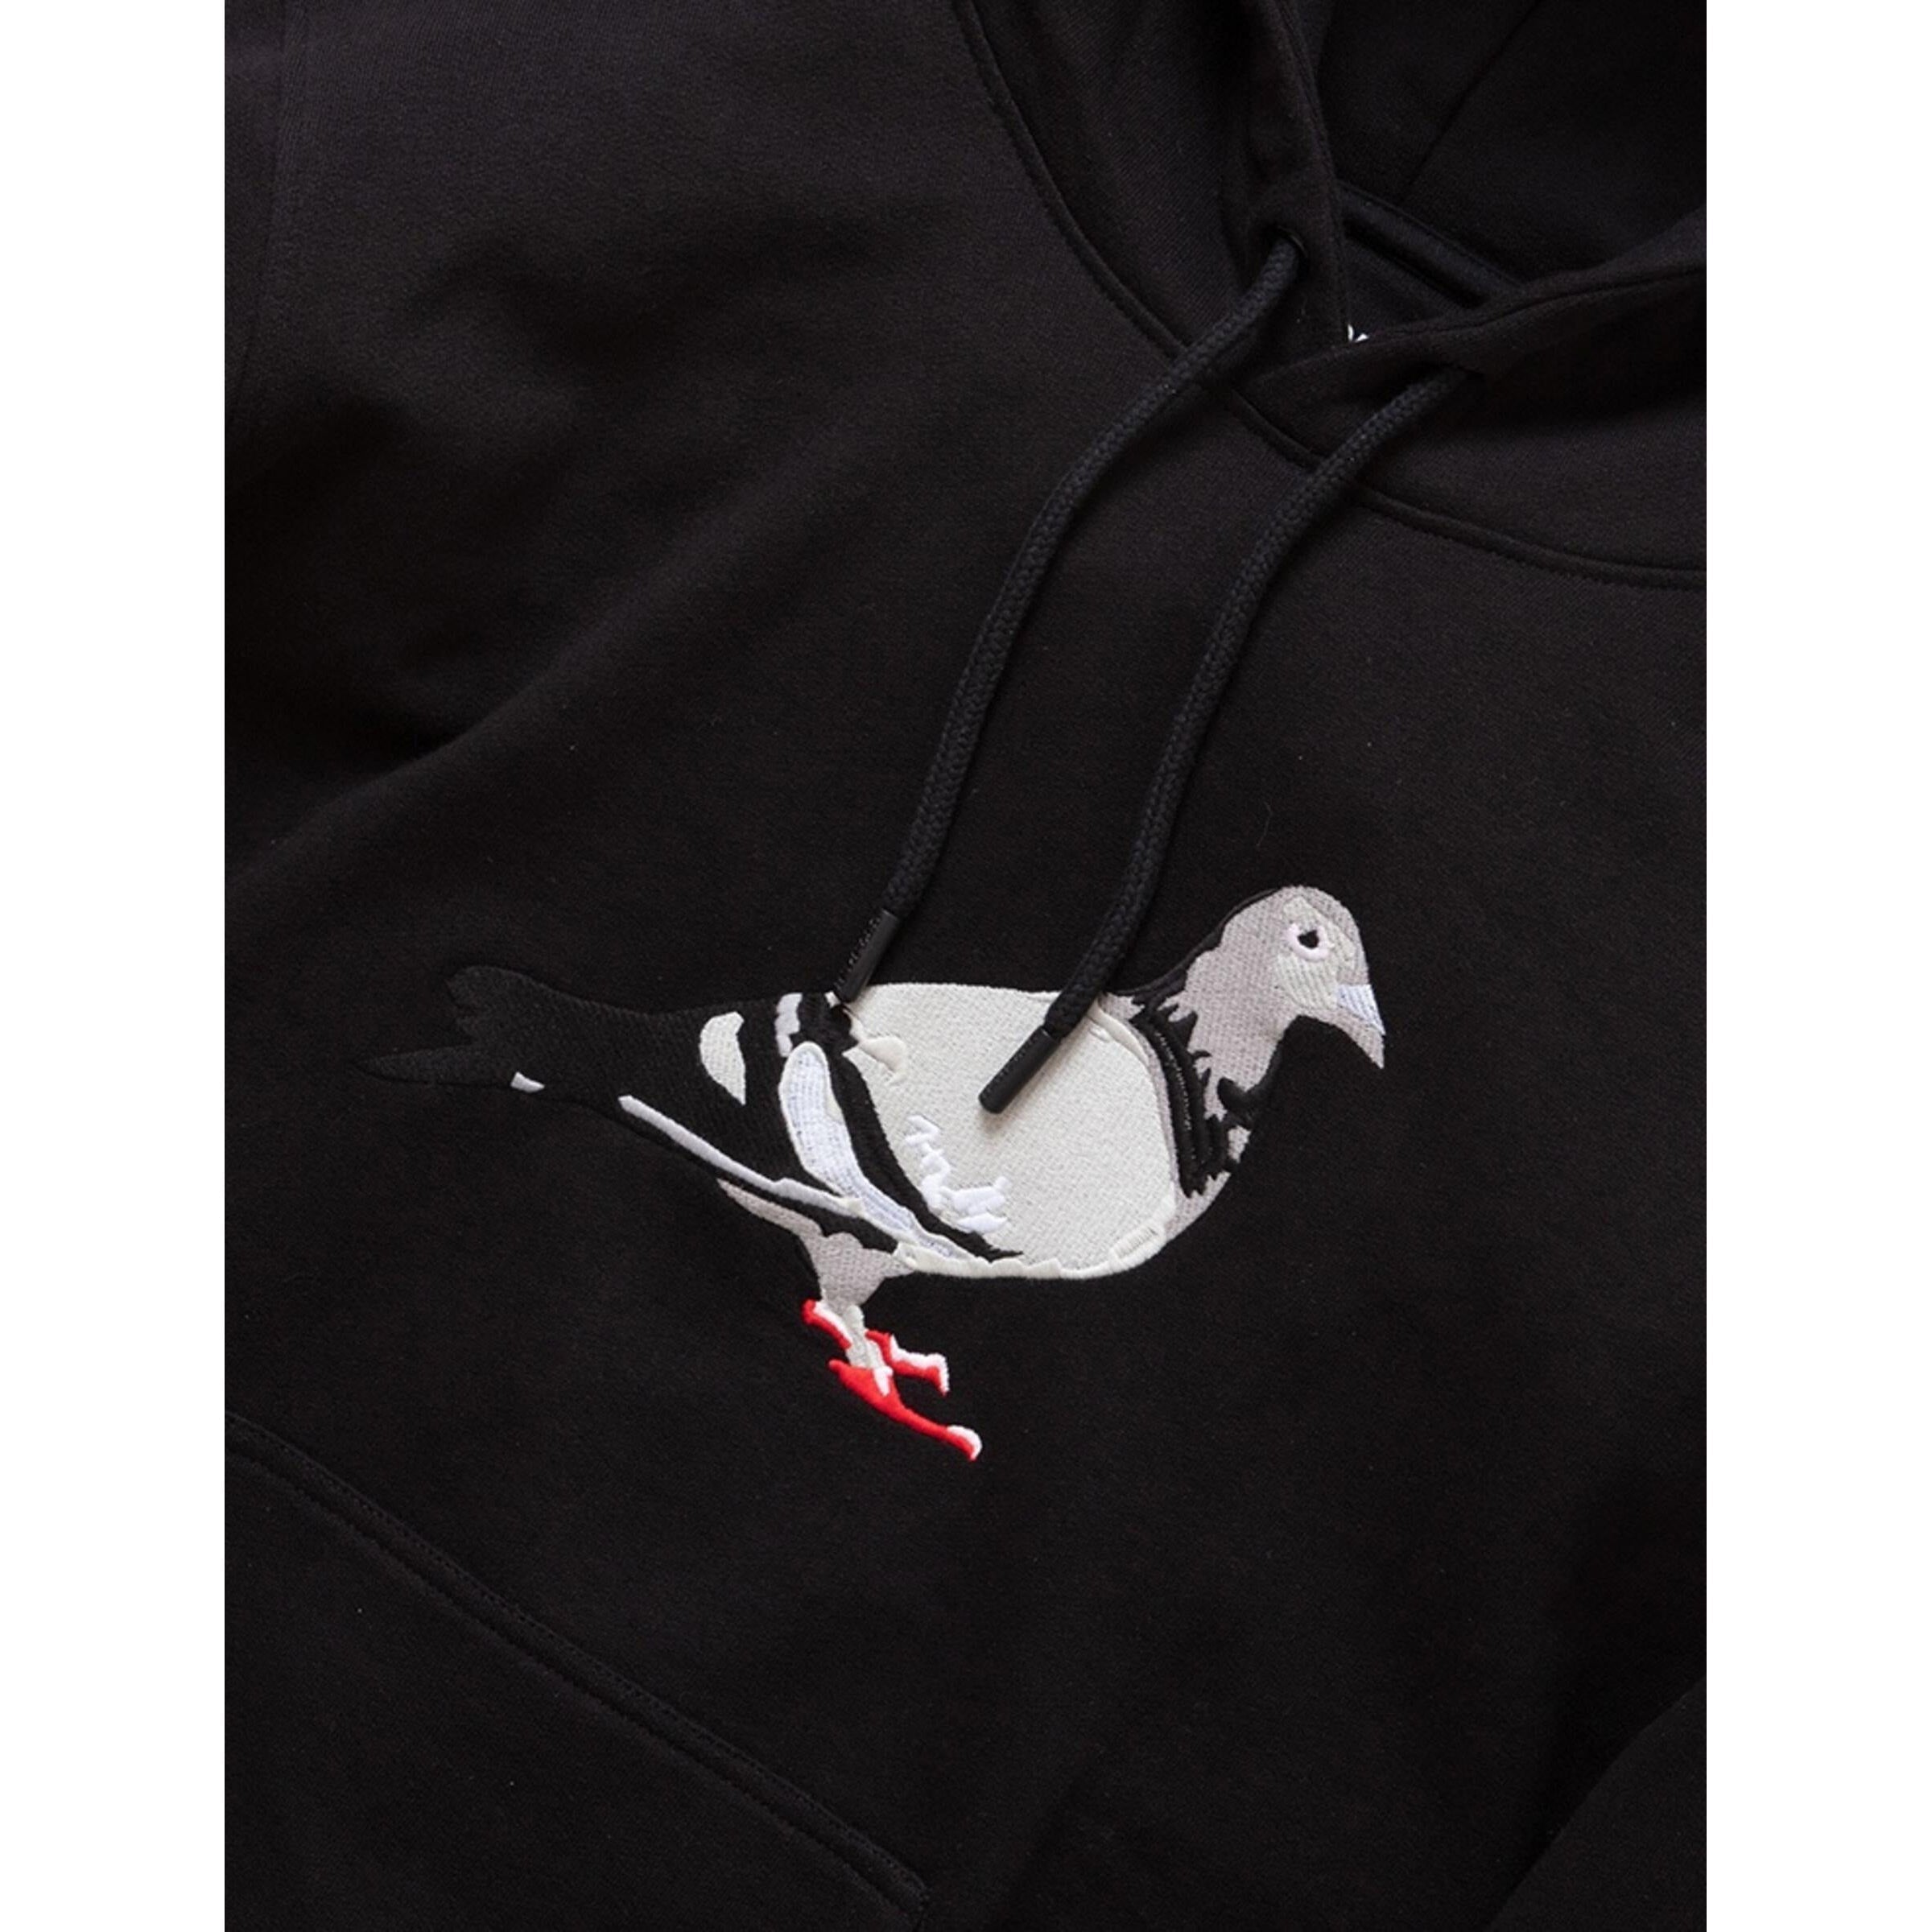 Staple Men Pigeon Logo Hoodie Black 2108H6668-BLK - SWEATERS - Canada